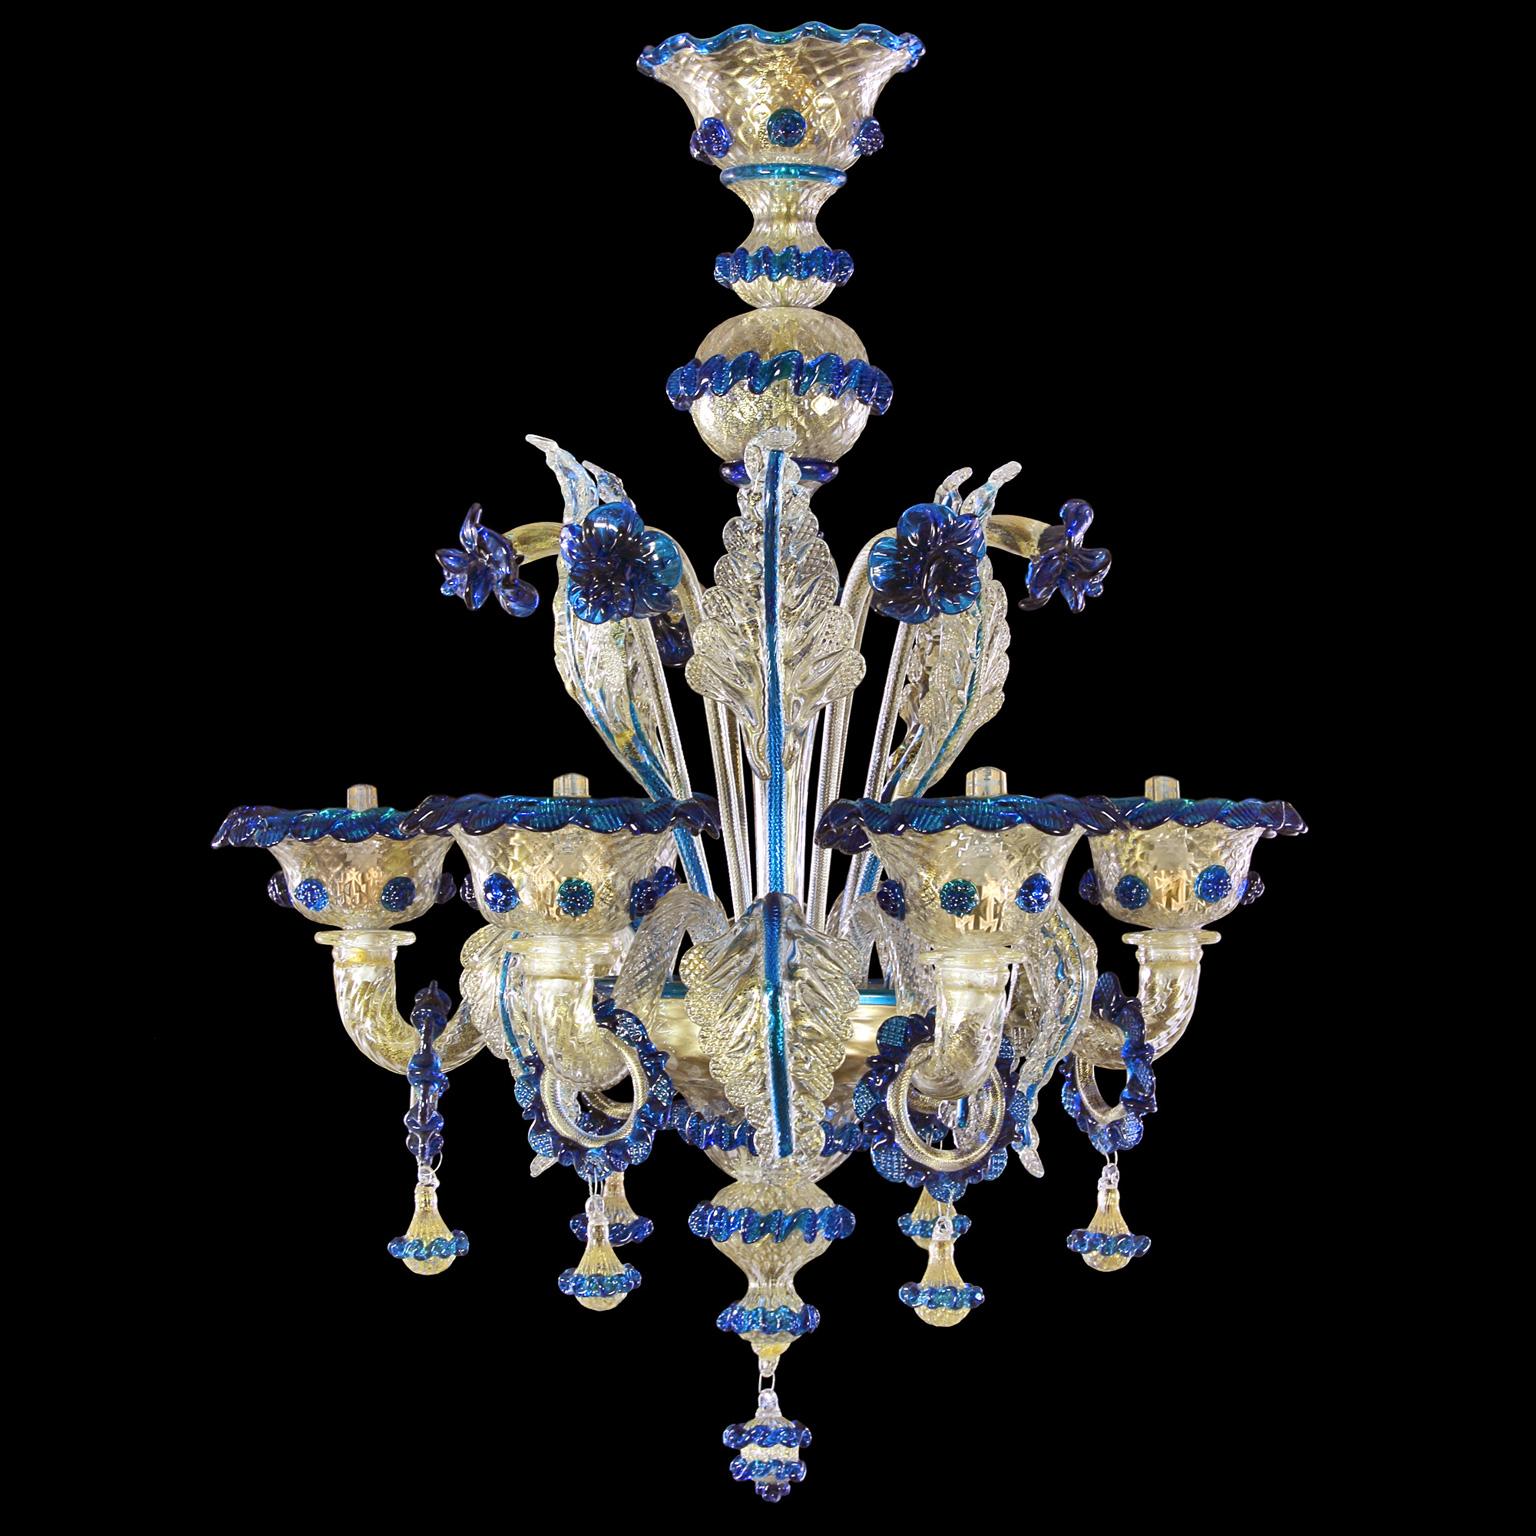 Lustre Galliano, 6 lumières, verre de Murano doré, détails bleus par Multiforme.
Ce lustre artistique en verre a 6 lumières, est fait à la main en cristal et en verre rose avec des fleurs en pâte de verre vitreuse polychrome.
Galliano est notre